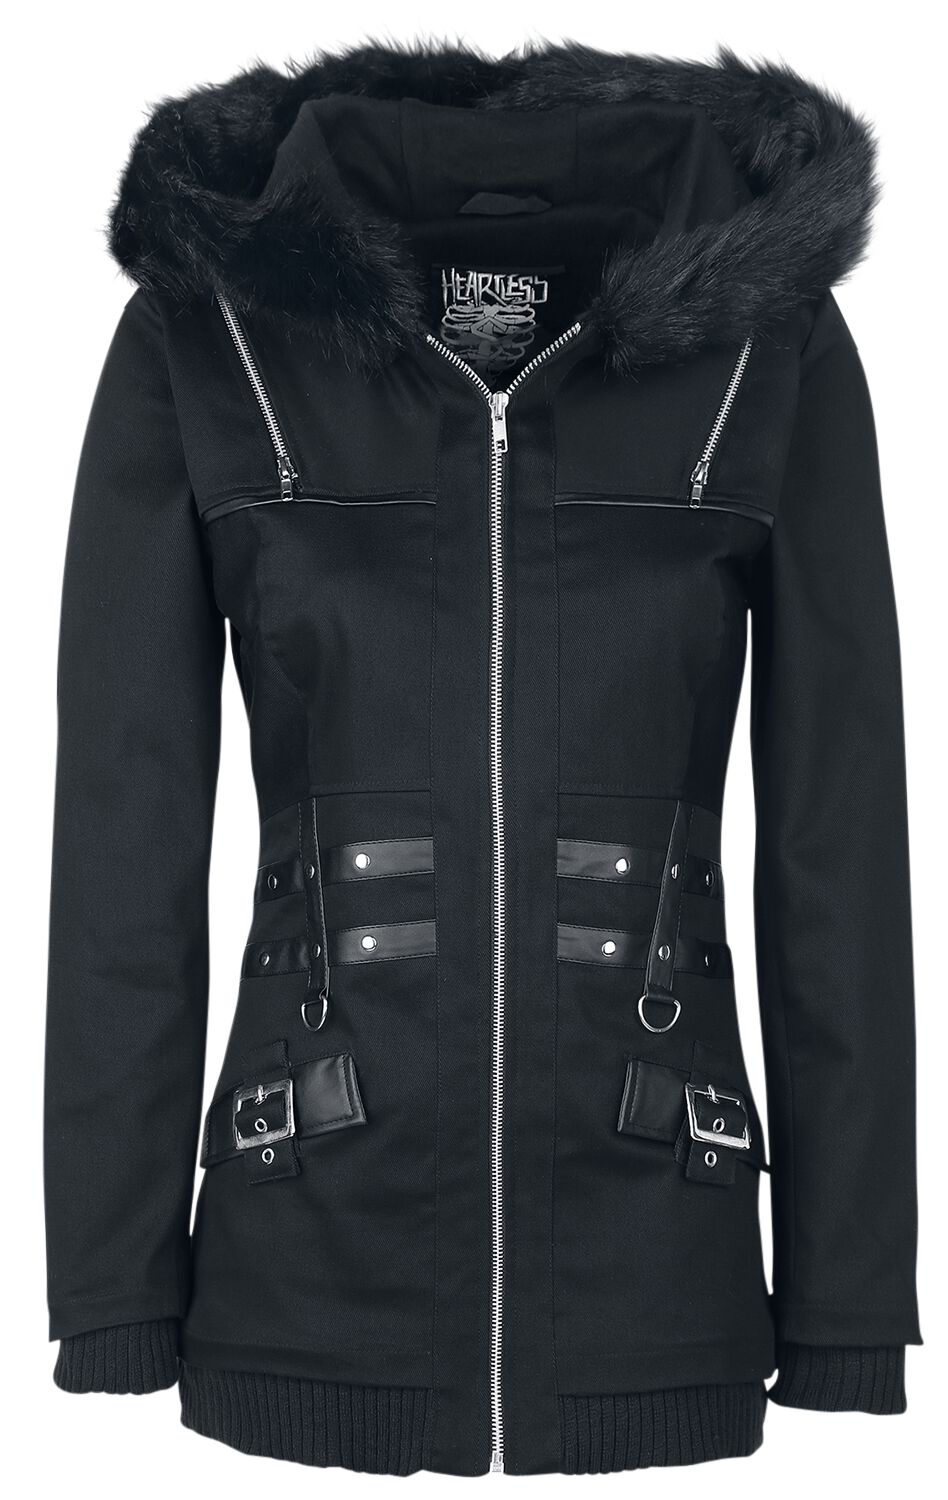 Heartless - Gothic Übergangsjacke - Sara Jacket - XS bis XL - für Damen - Größe XS - schwarz